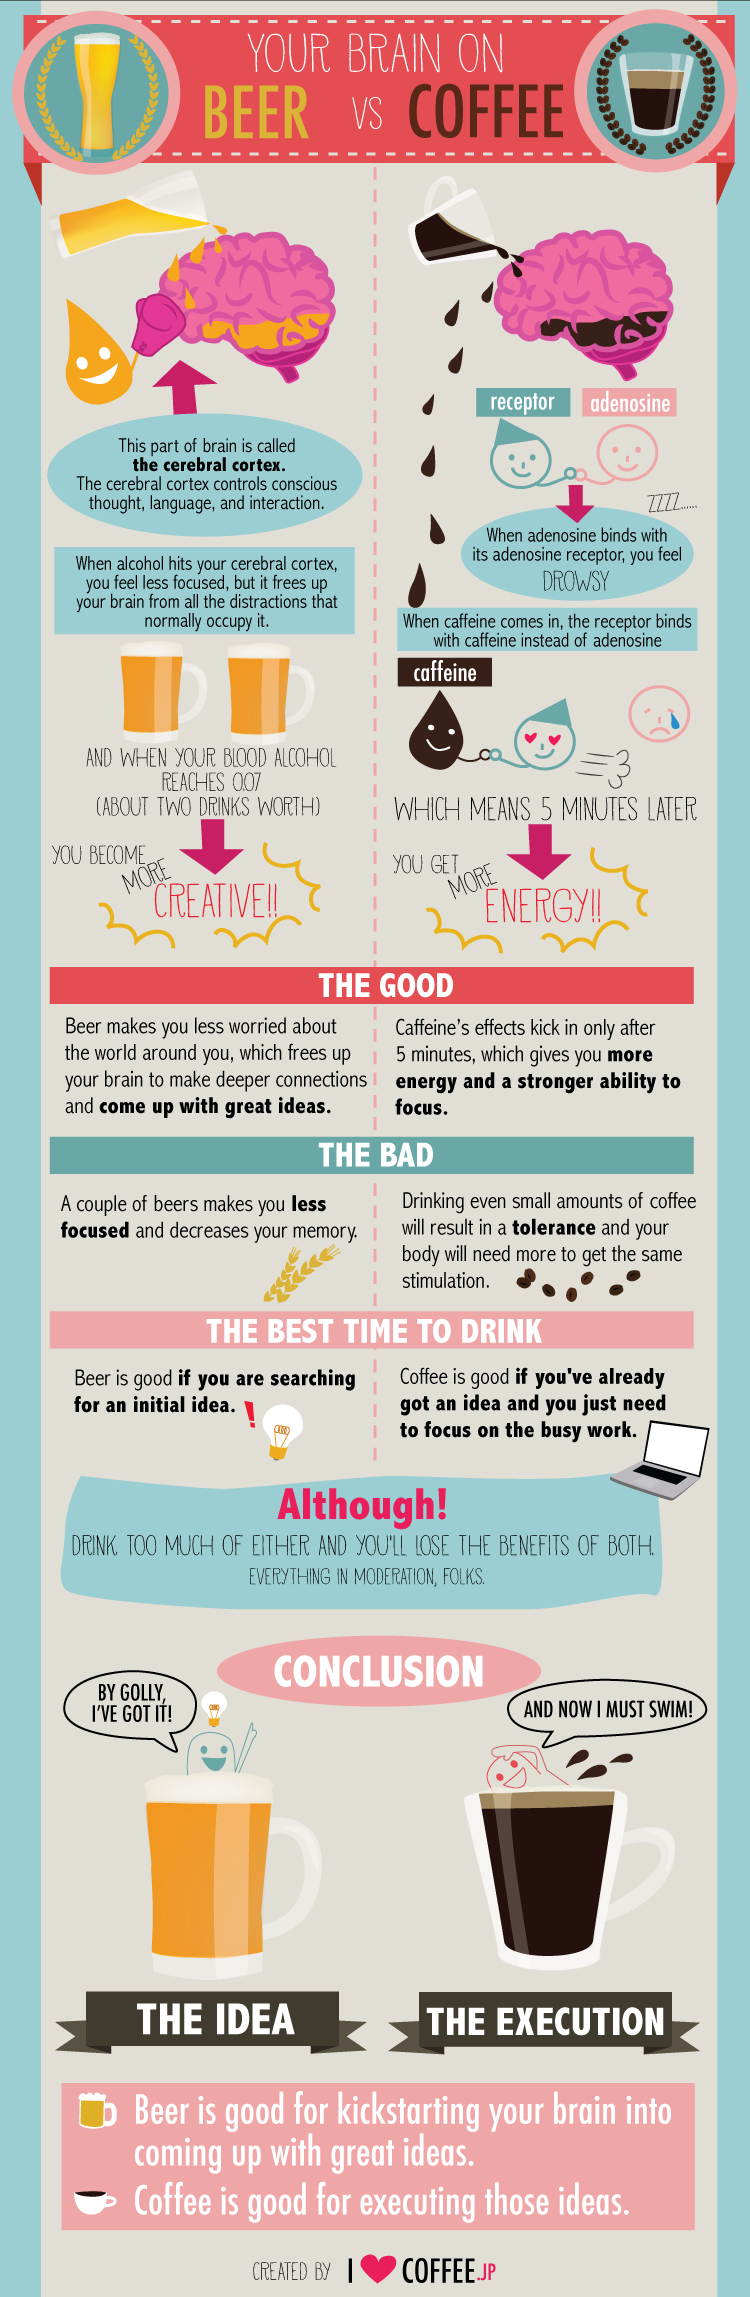 El cerebro: café vs. cerveza #Infografía #Curiosidades #CuerpoHumano